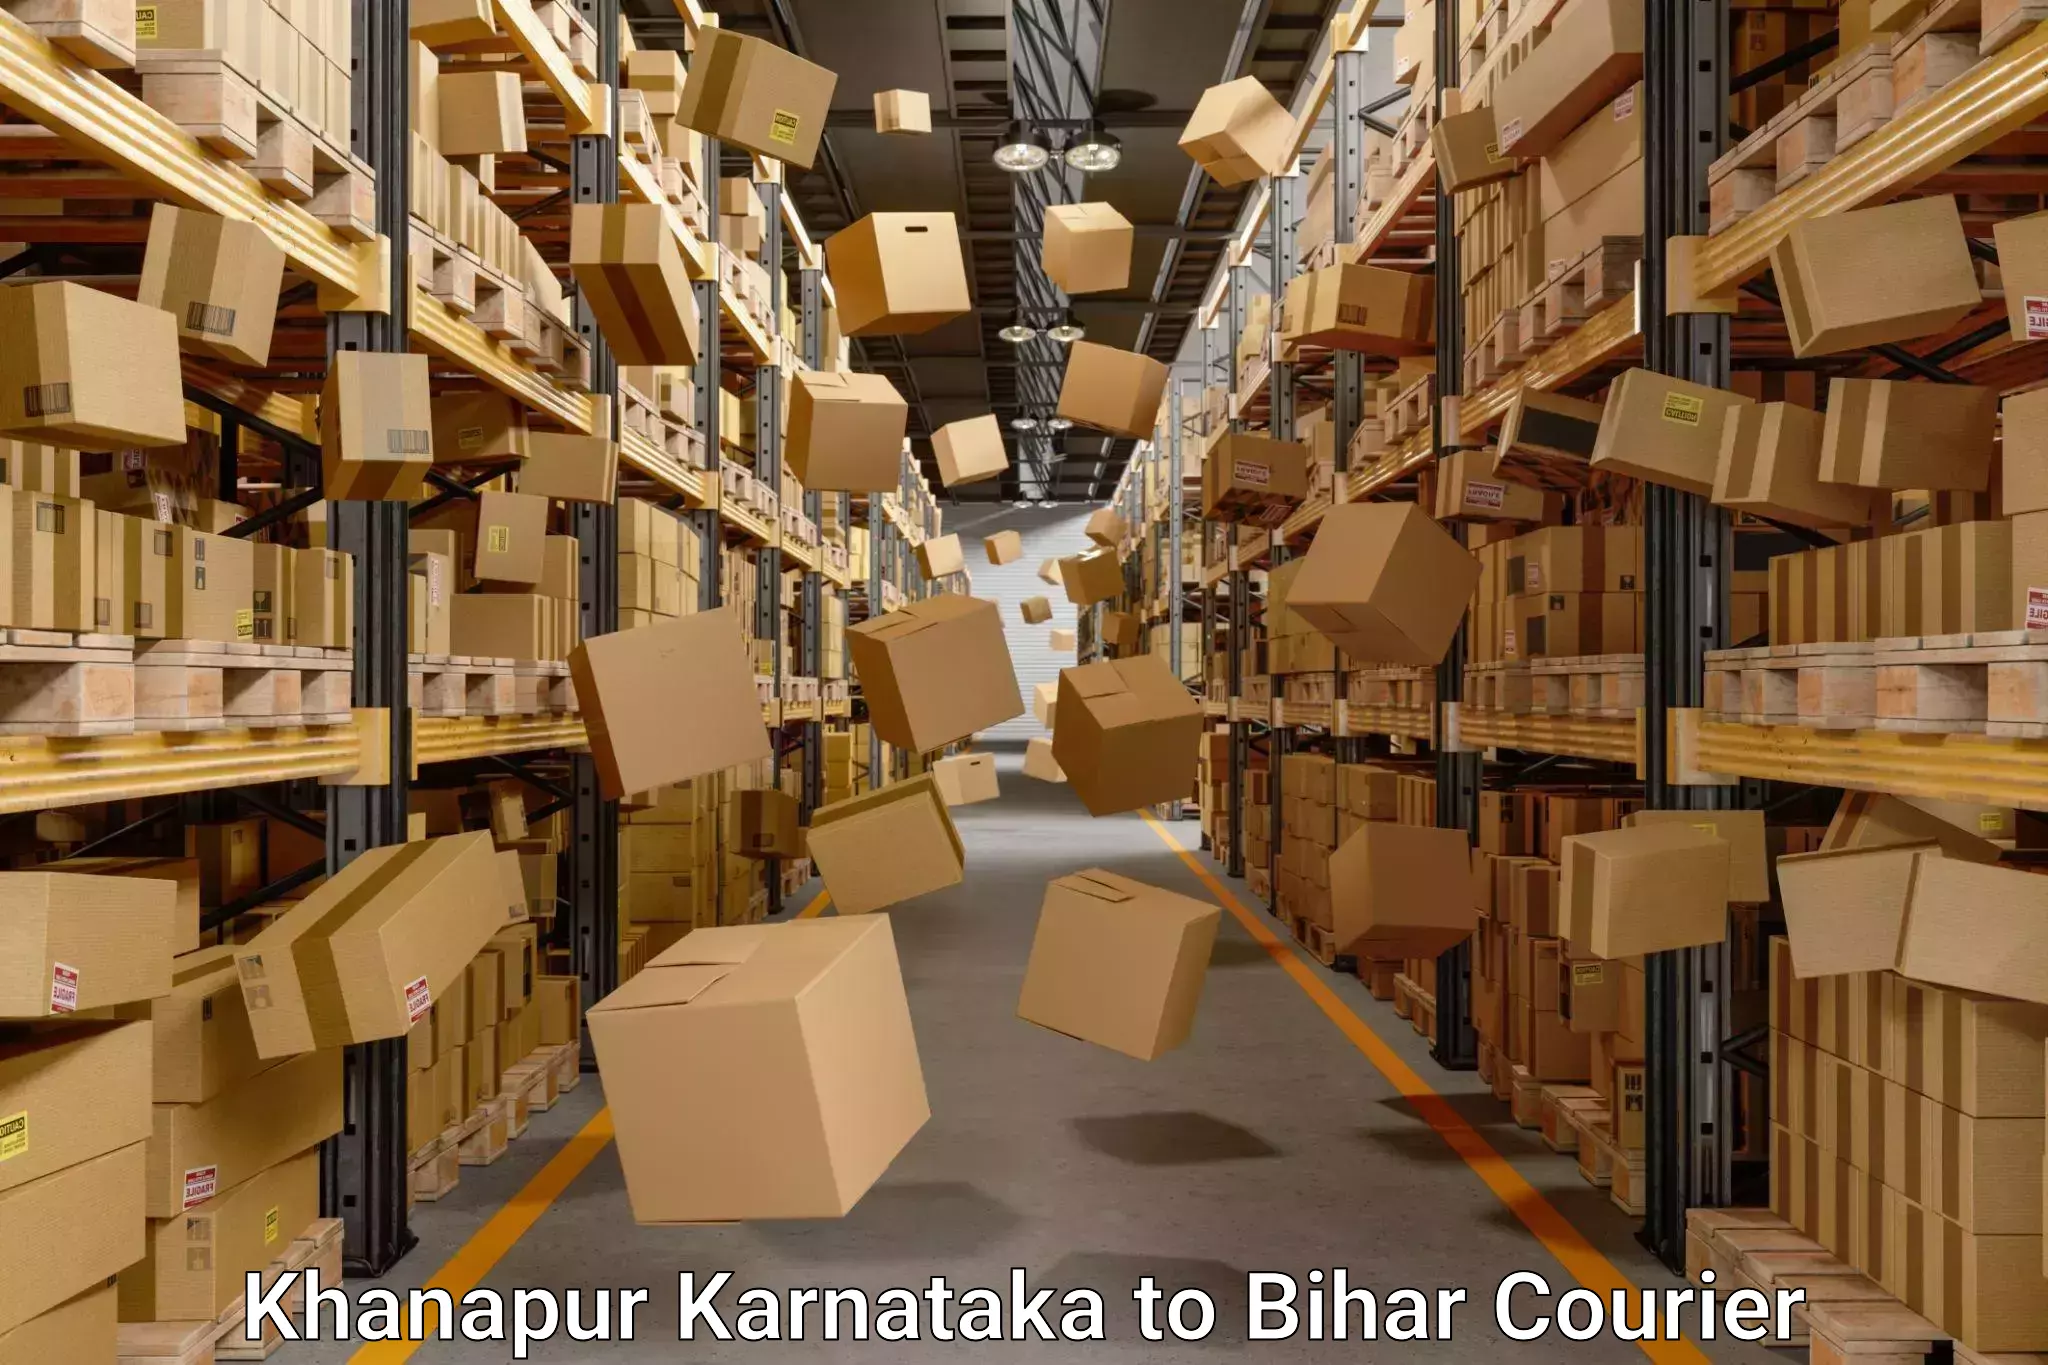 Moving and storage services in Khanapur Karnataka to Saraiya